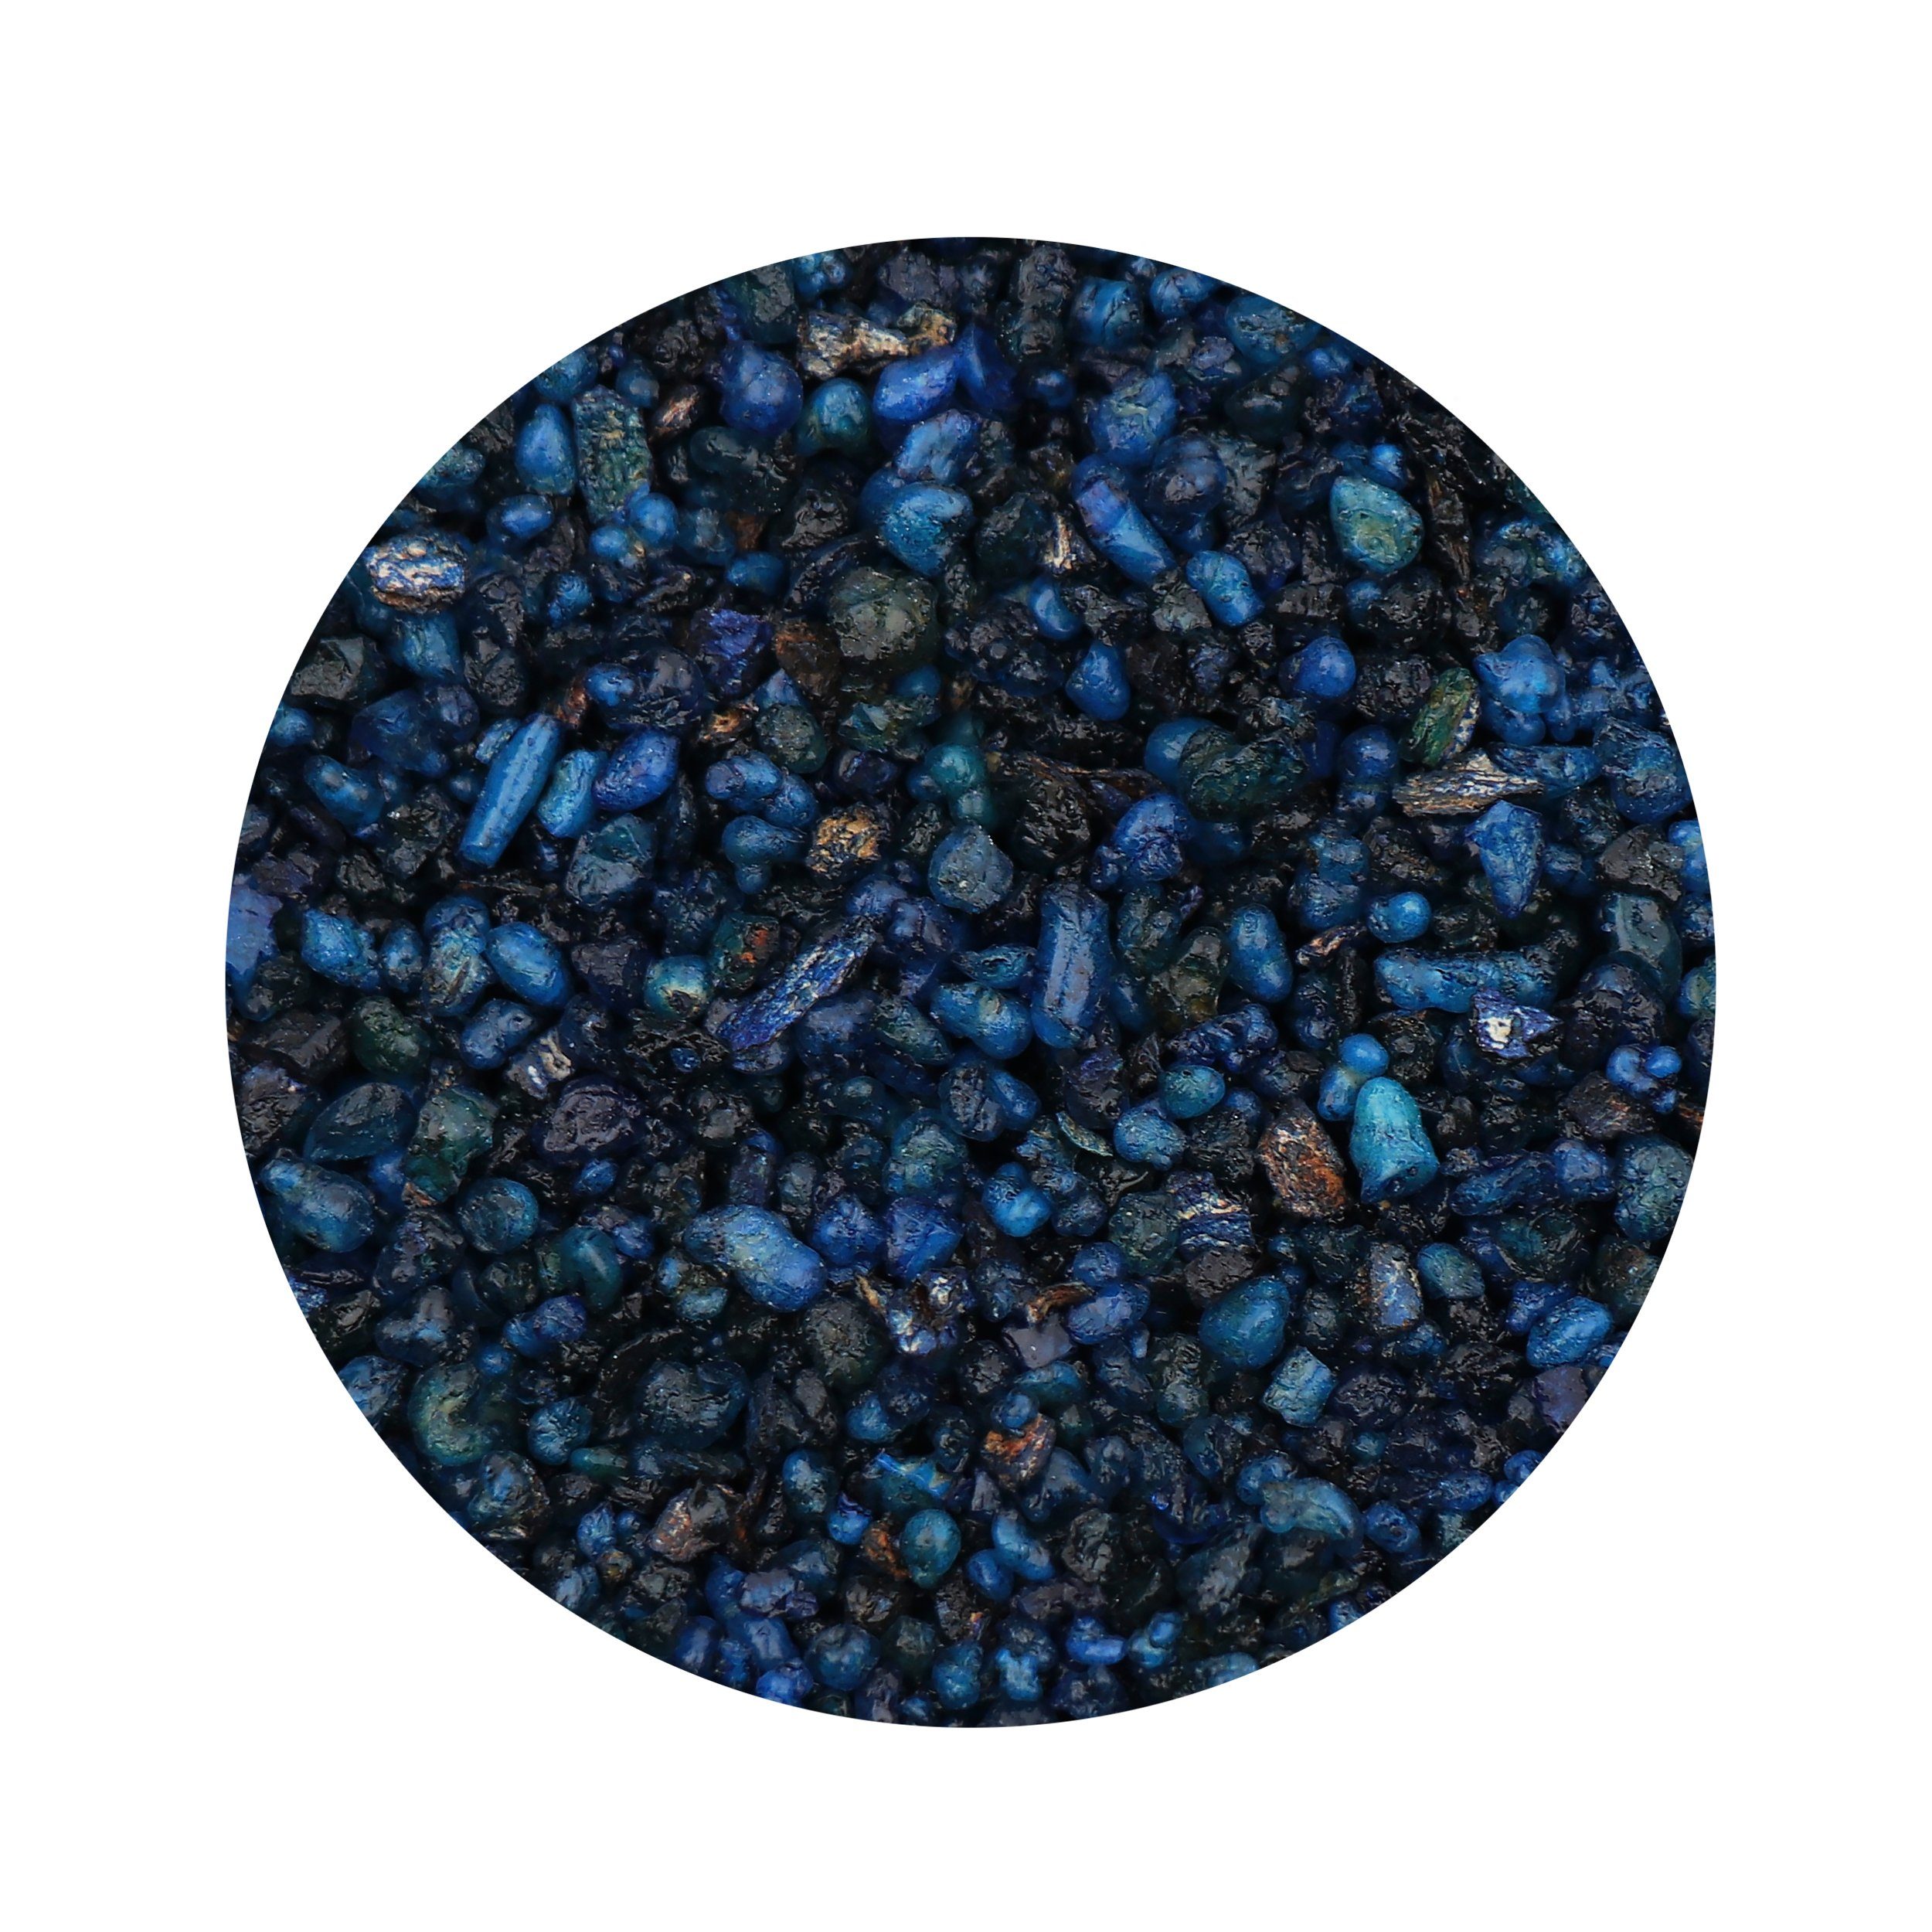 NKlaus Räucherstäbchen-Halter 100g Weihrauch Blau naturreine Olibaum Weihrauchmi, Weihrauch, Harze, Räuchermischung, Weihrauchmischung